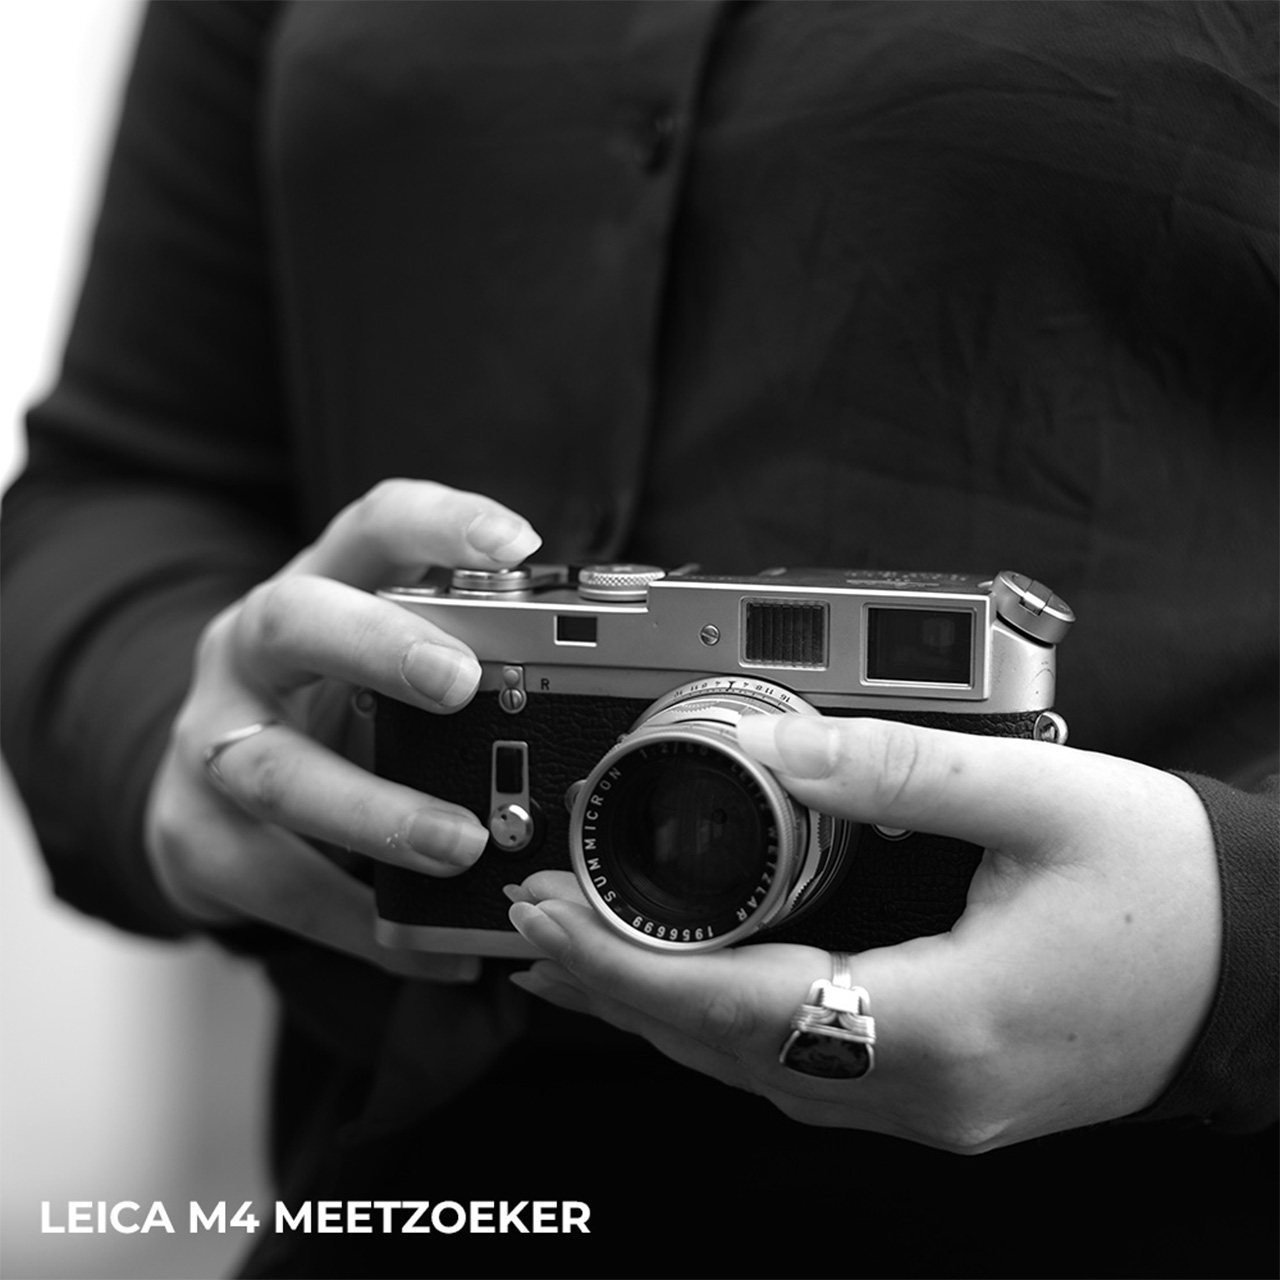 Leica M4 meetzoeker